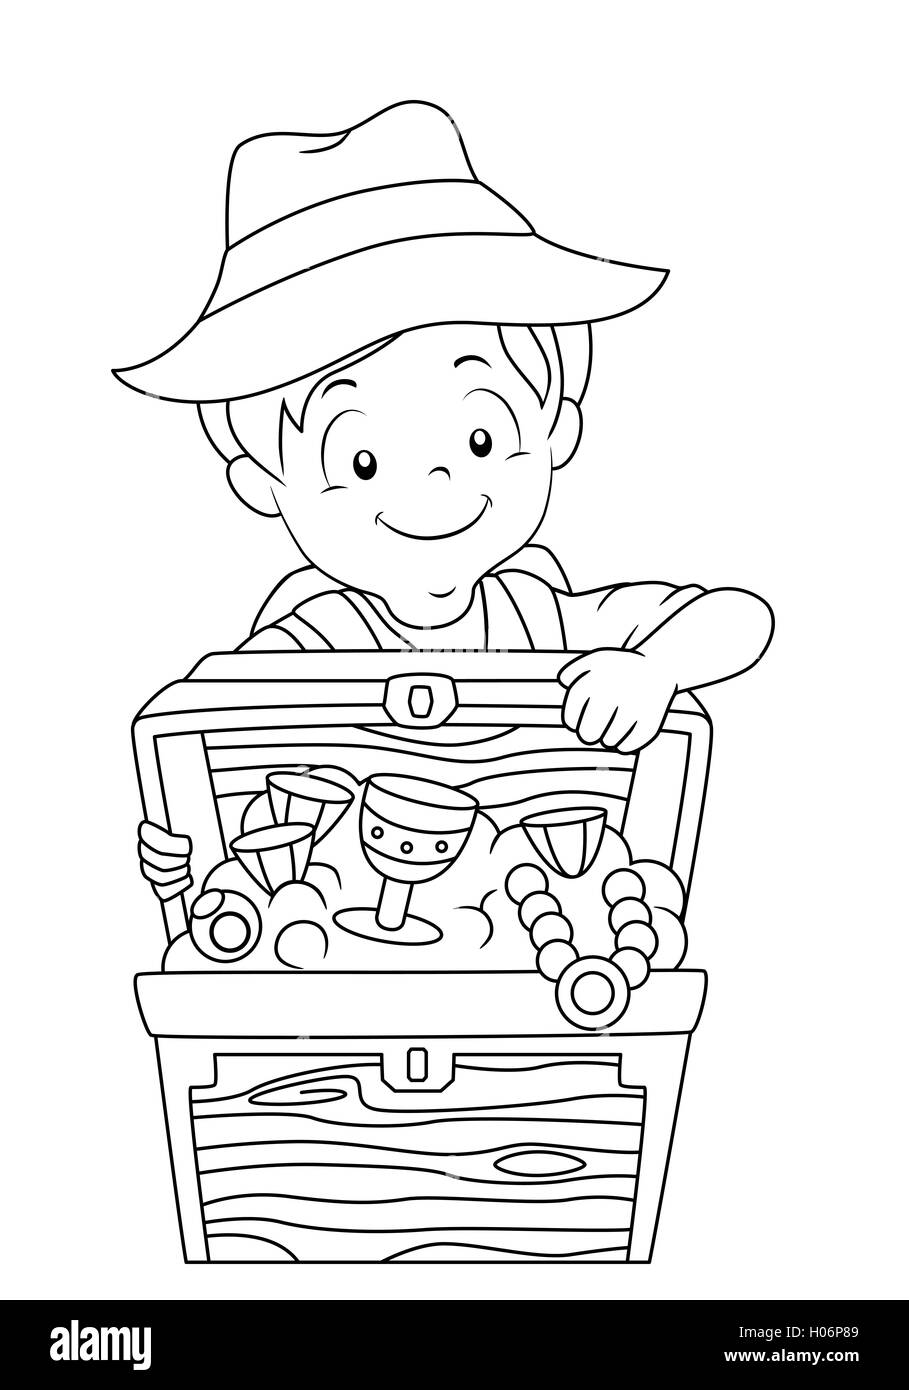 Le noir et blanc à colorier l'illustration d'un garçon de l'ouverture d'un coffre de trésor Banque D'Images